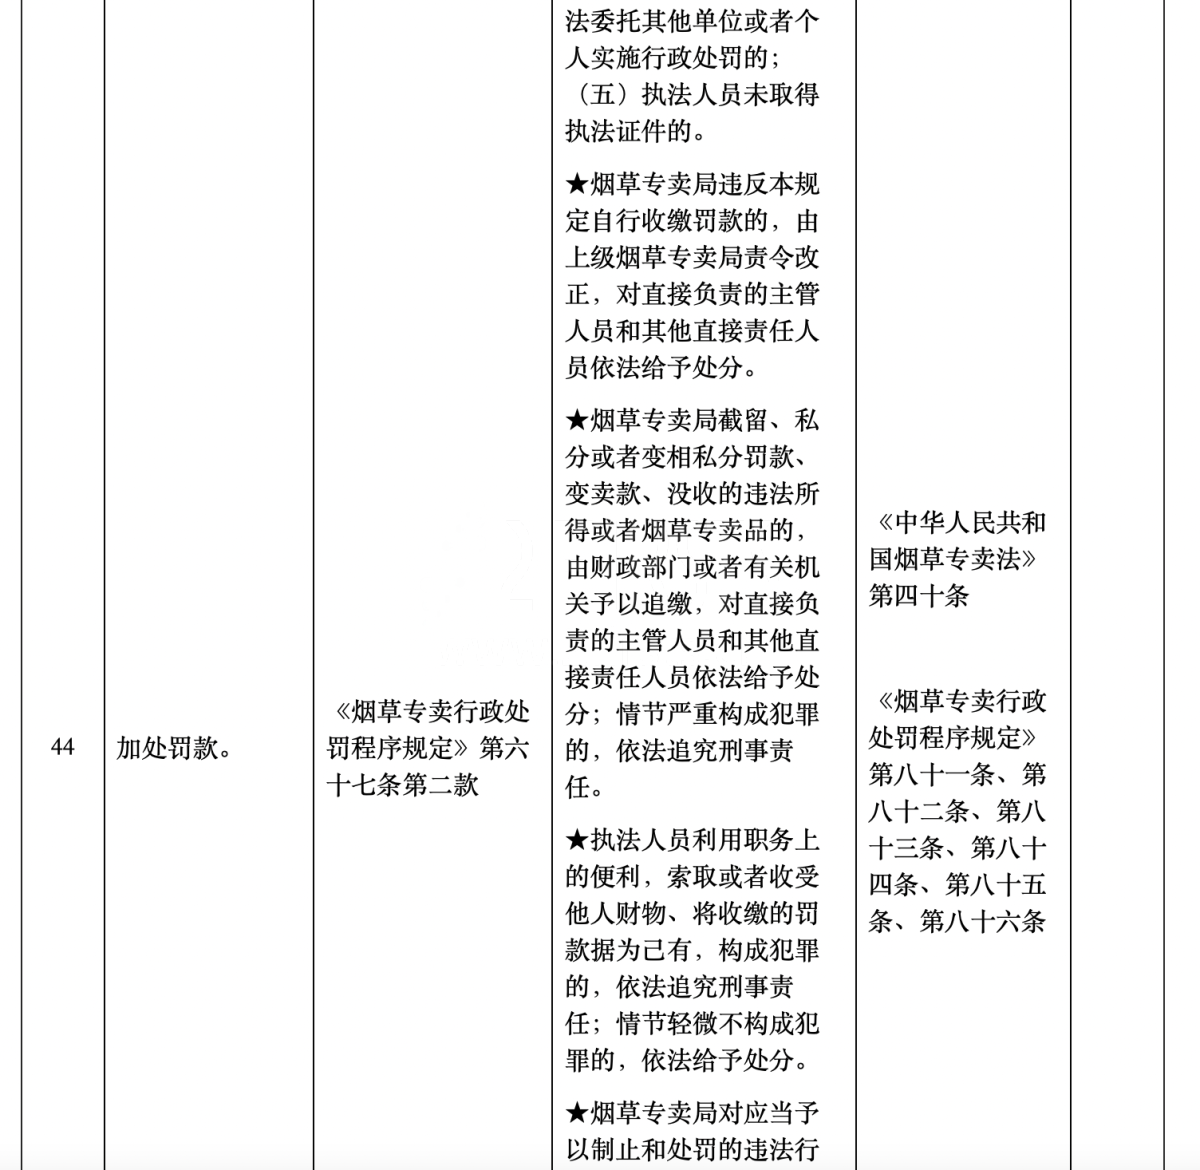 深圳市烟草专卖局公布权责清单